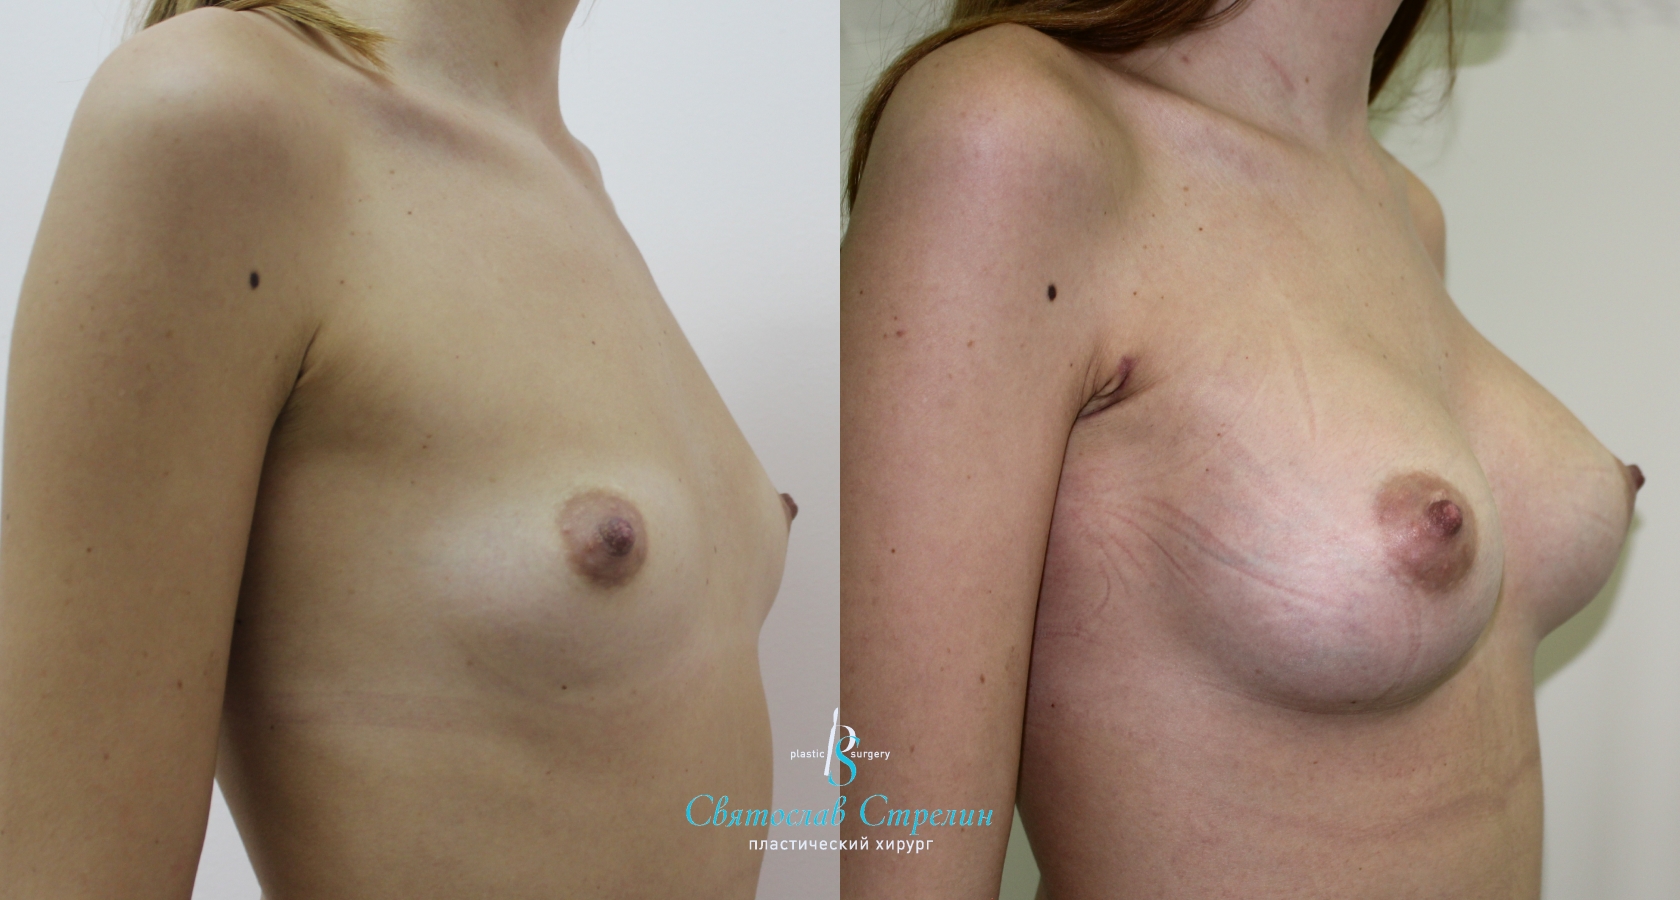 Увеличение груди, 2 месяца после операции, импланты Силимед 370 мл, анатомические, средняя высота, высокая проекция, доступ подмышечный